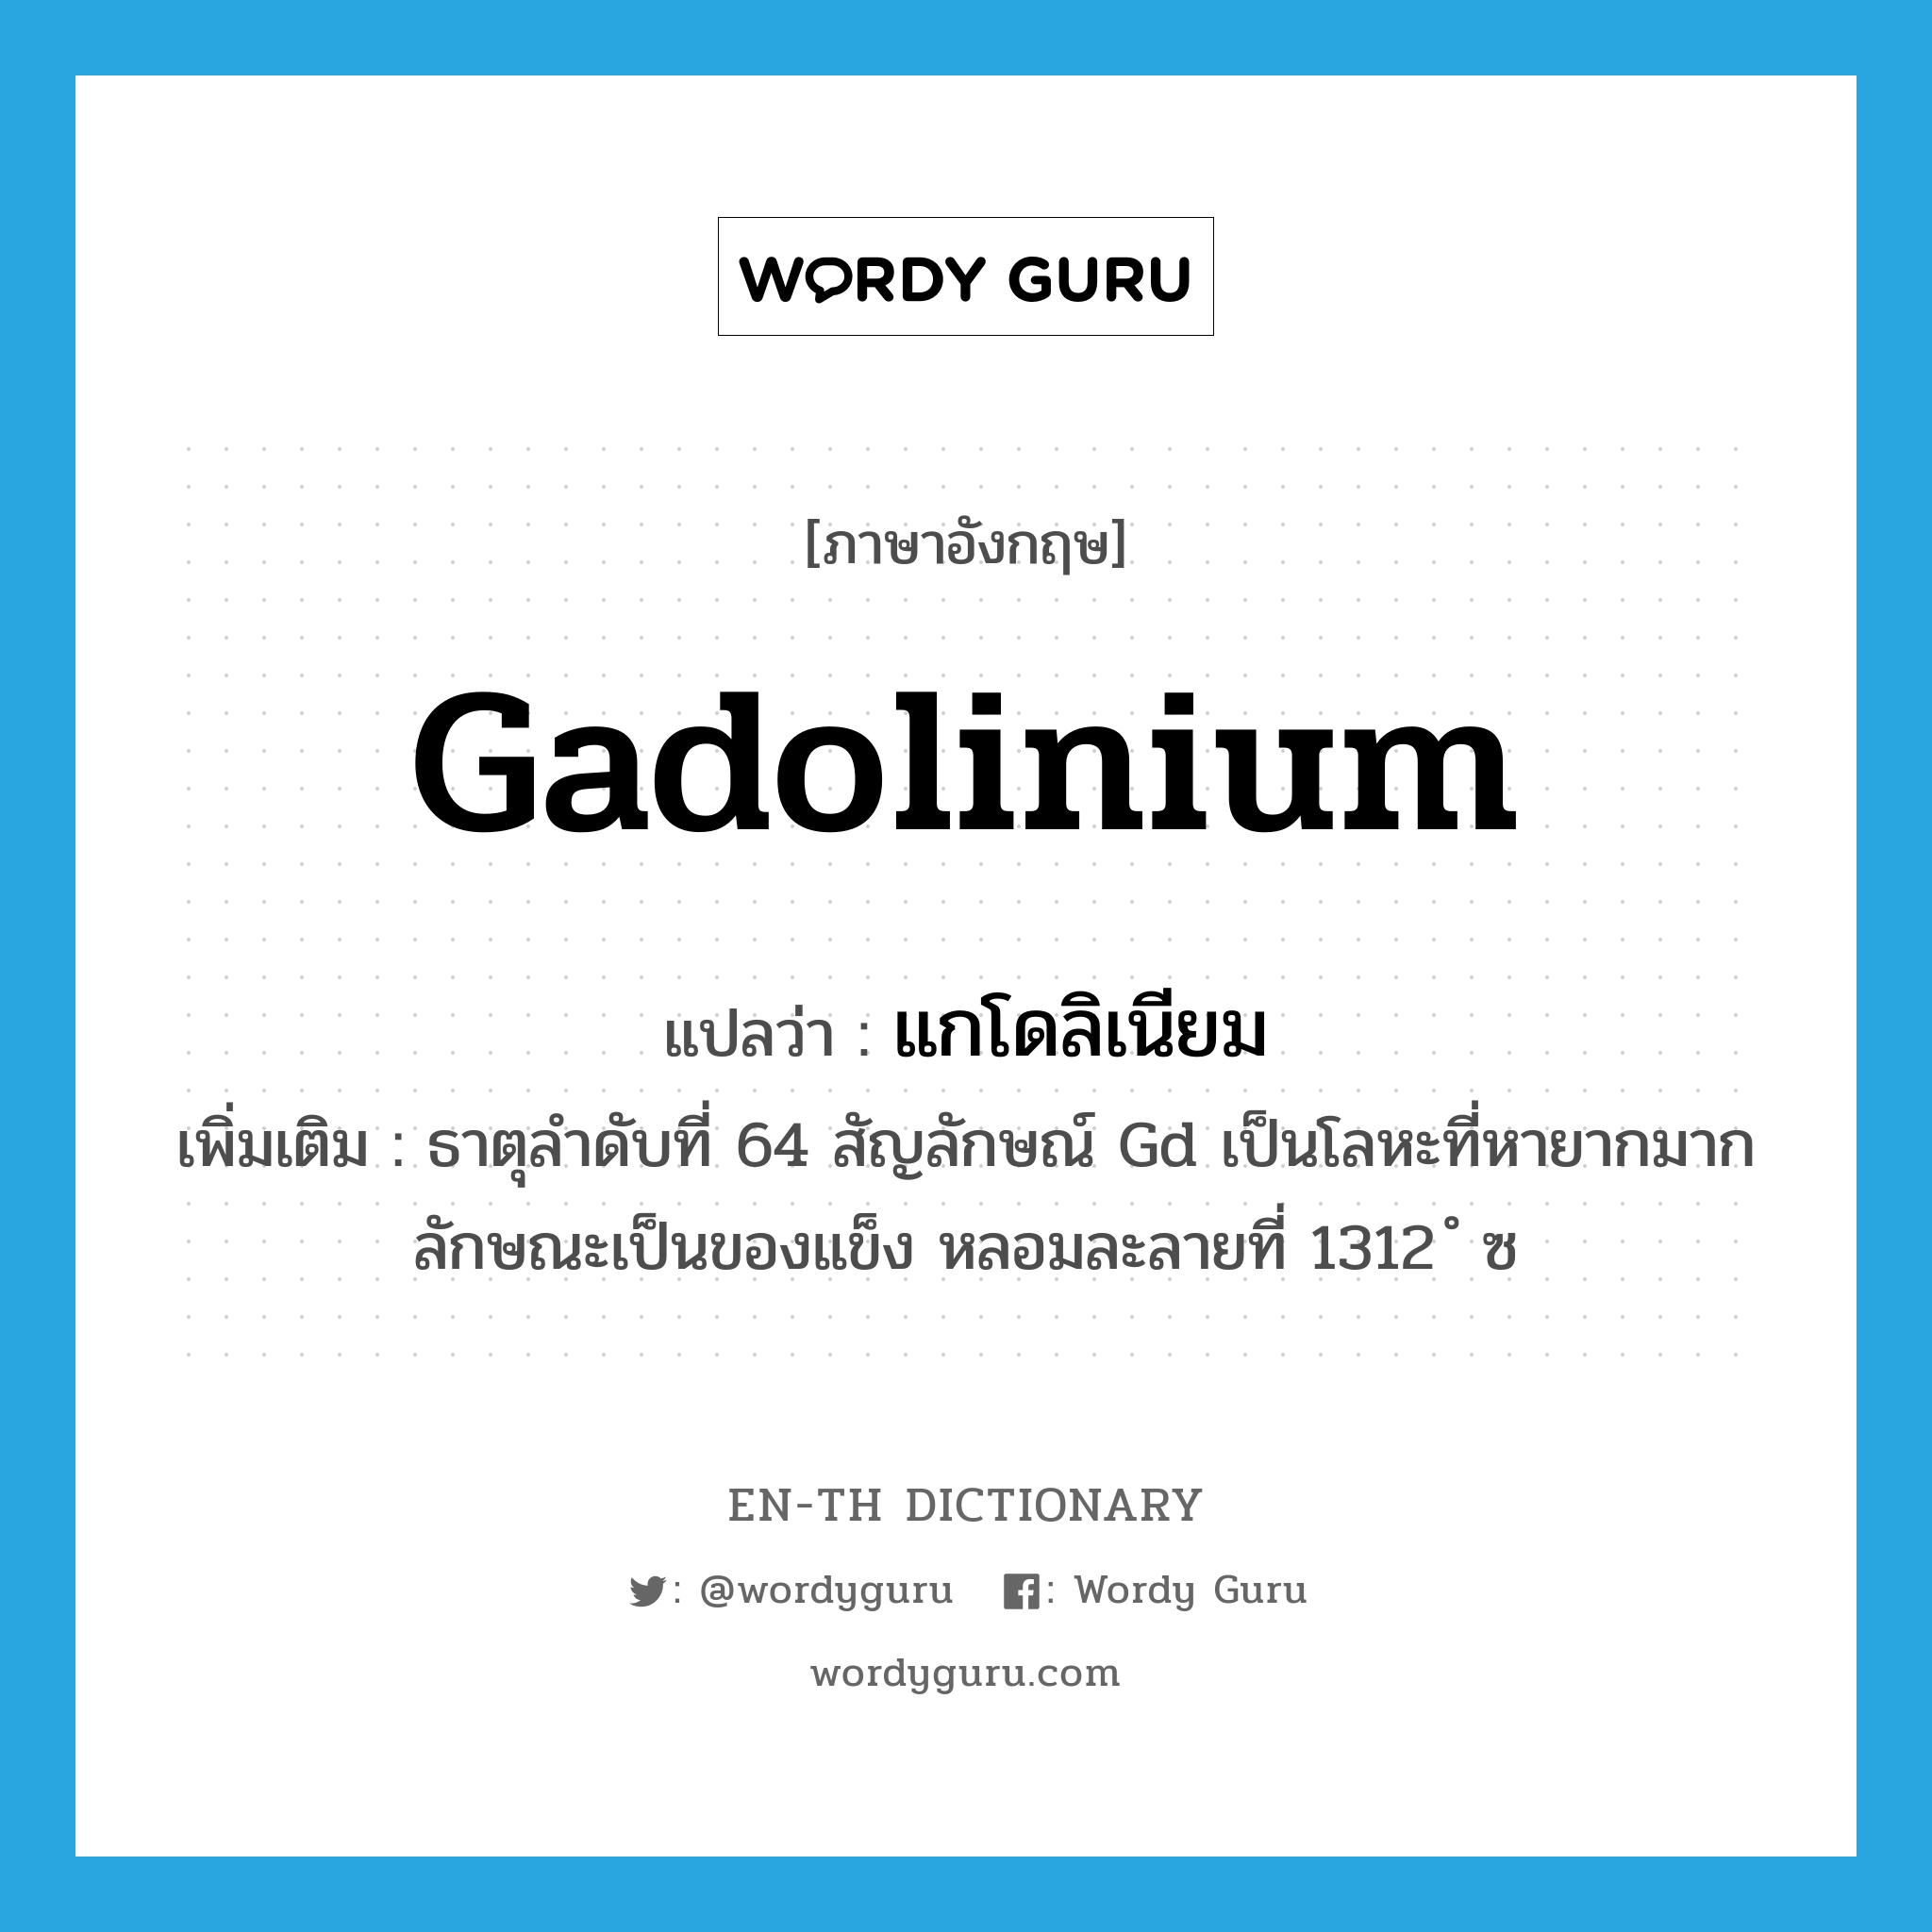 แกโดลิเนียม ภาษาอังกฤษ?, คำศัพท์ภาษาอังกฤษ แกโดลิเนียม แปลว่า gadolinium ประเภท N เพิ่มเติม ธาตุลำดับที่ 64 สัญลักษณ์ Gd เป็นโลหะที่หายากมาก ลักษณะเป็นของแข็ง หลอมละลายที่ 1312 ํ ซ หมวด N